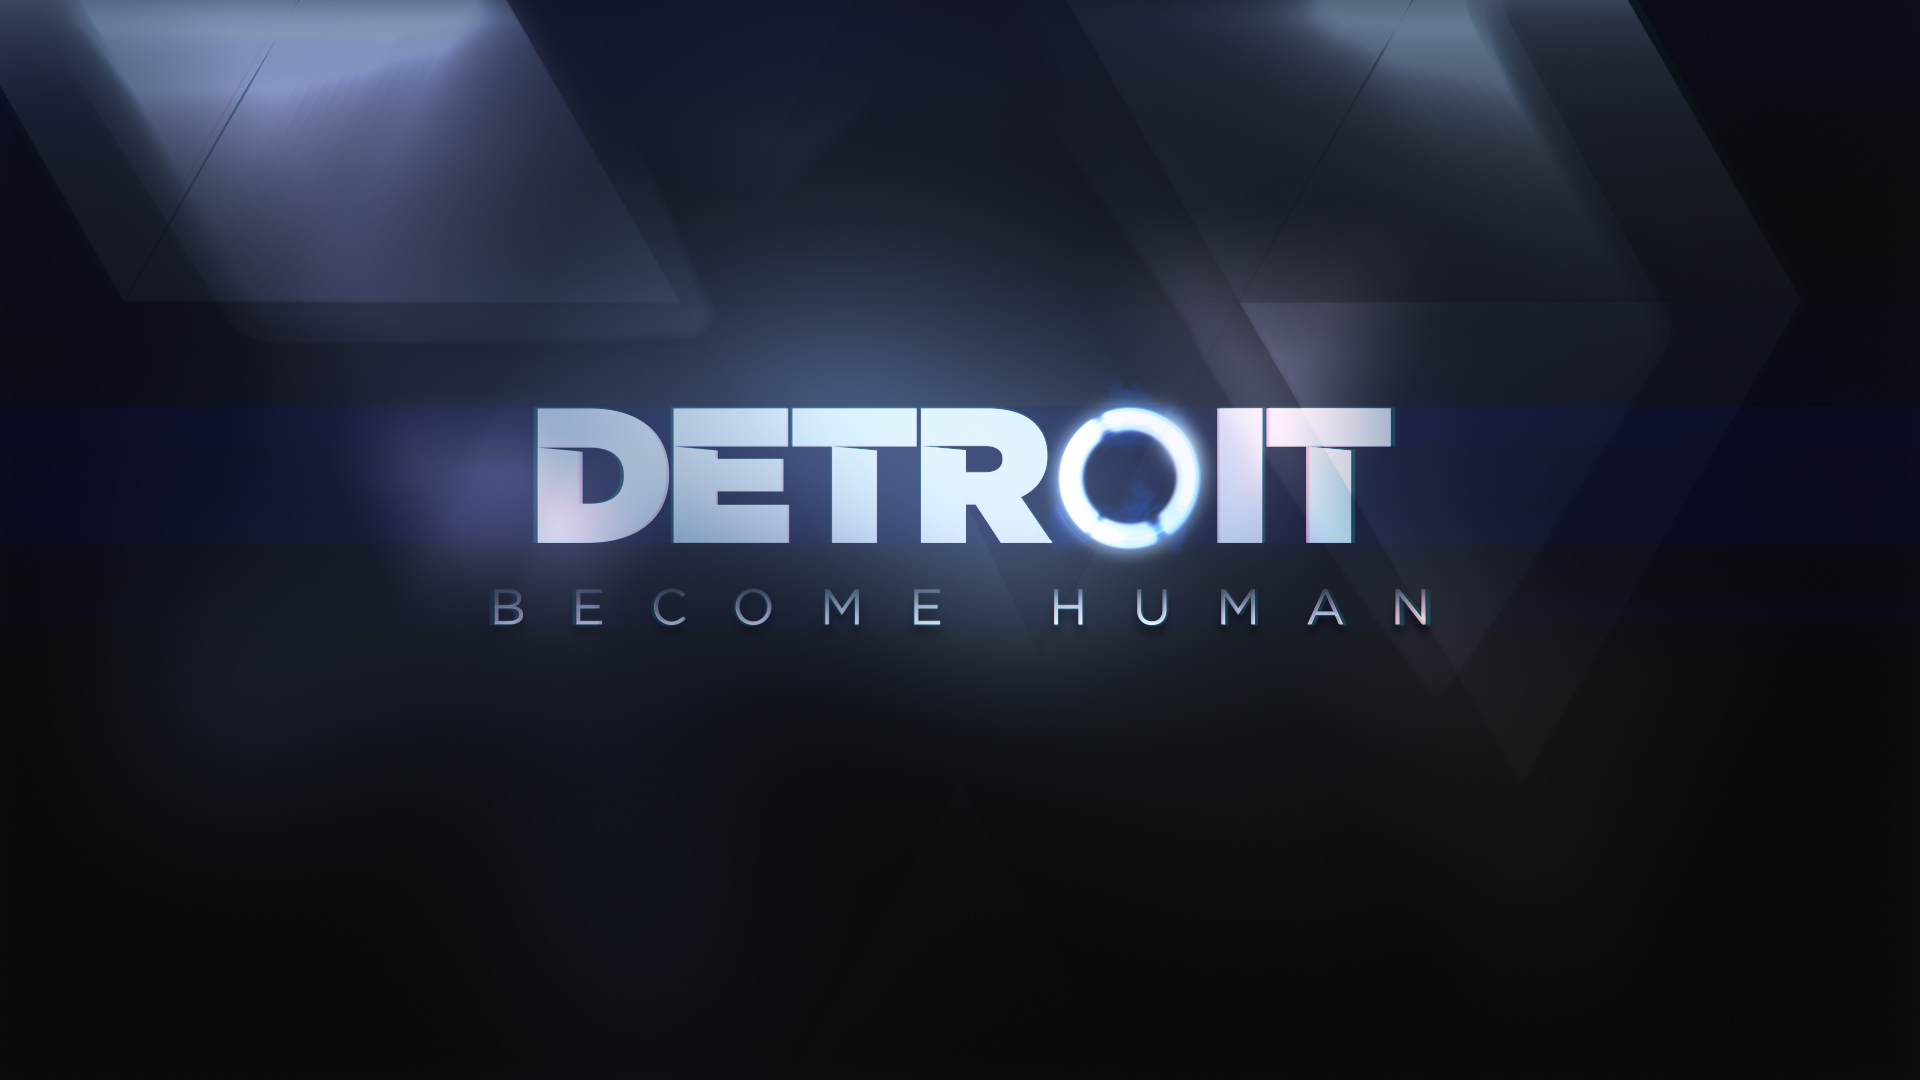 Descargar fondos de escritorio de Detroit: Become Human HD